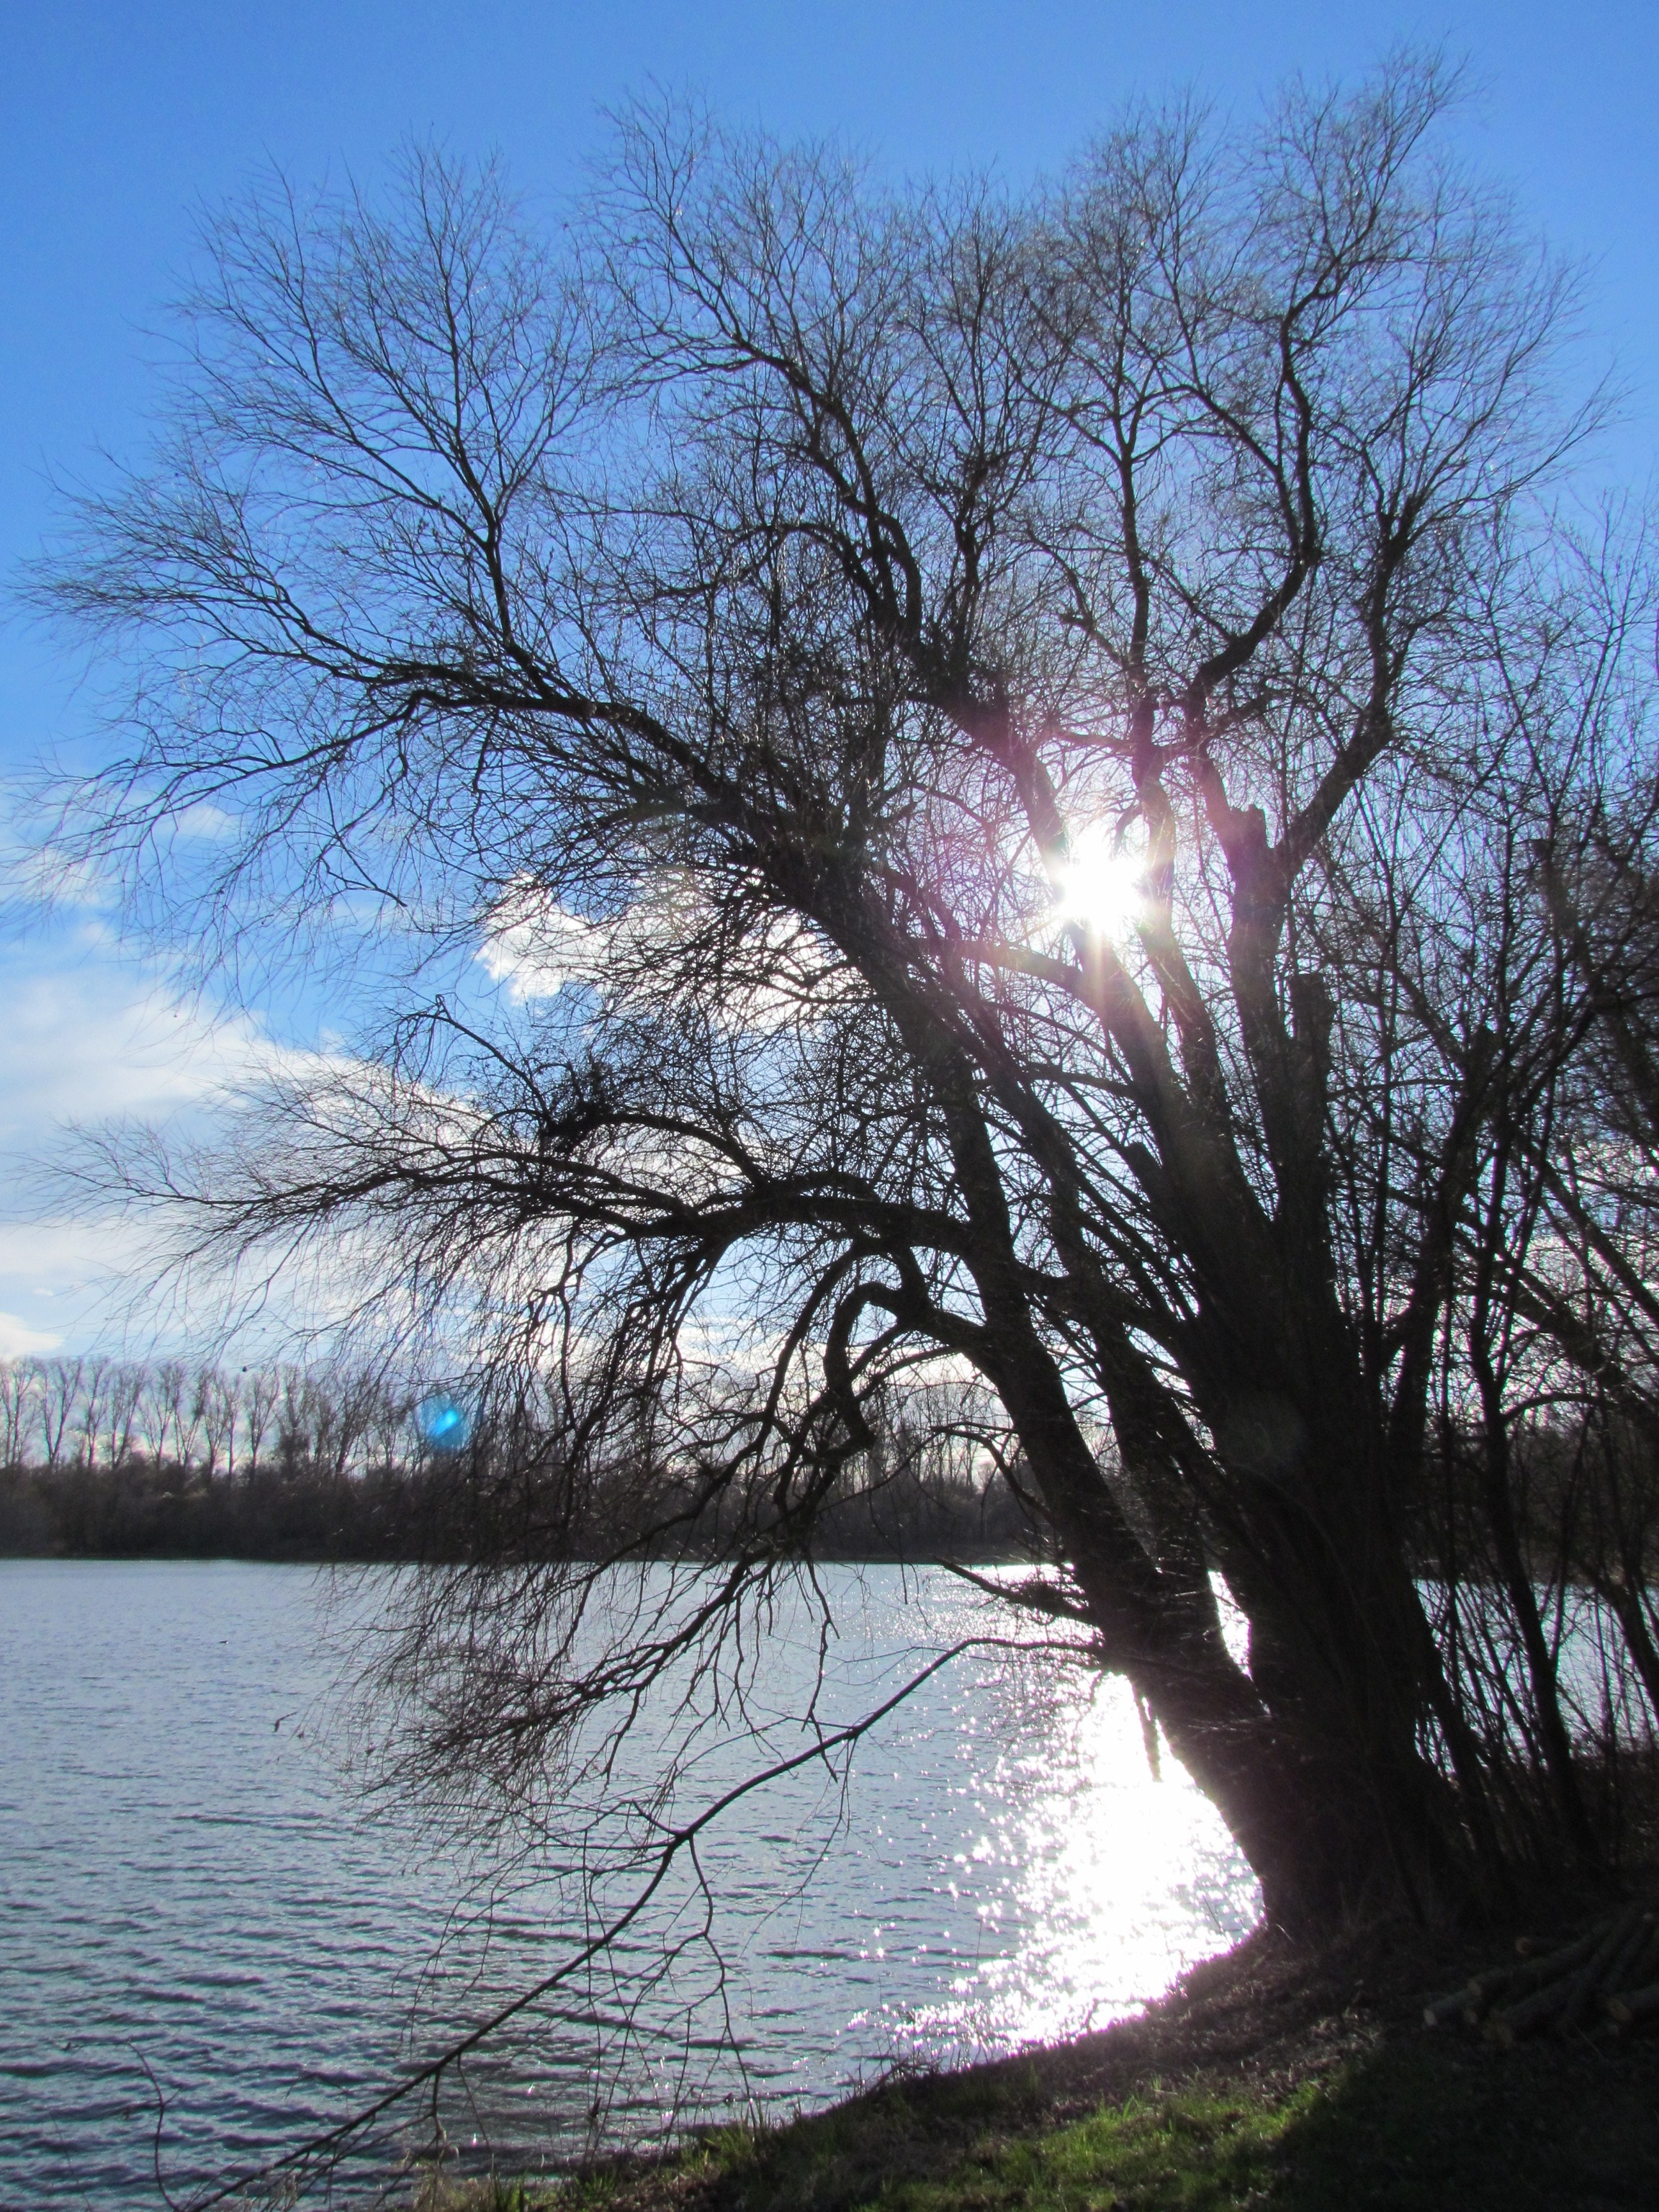 leafless tree near body of water